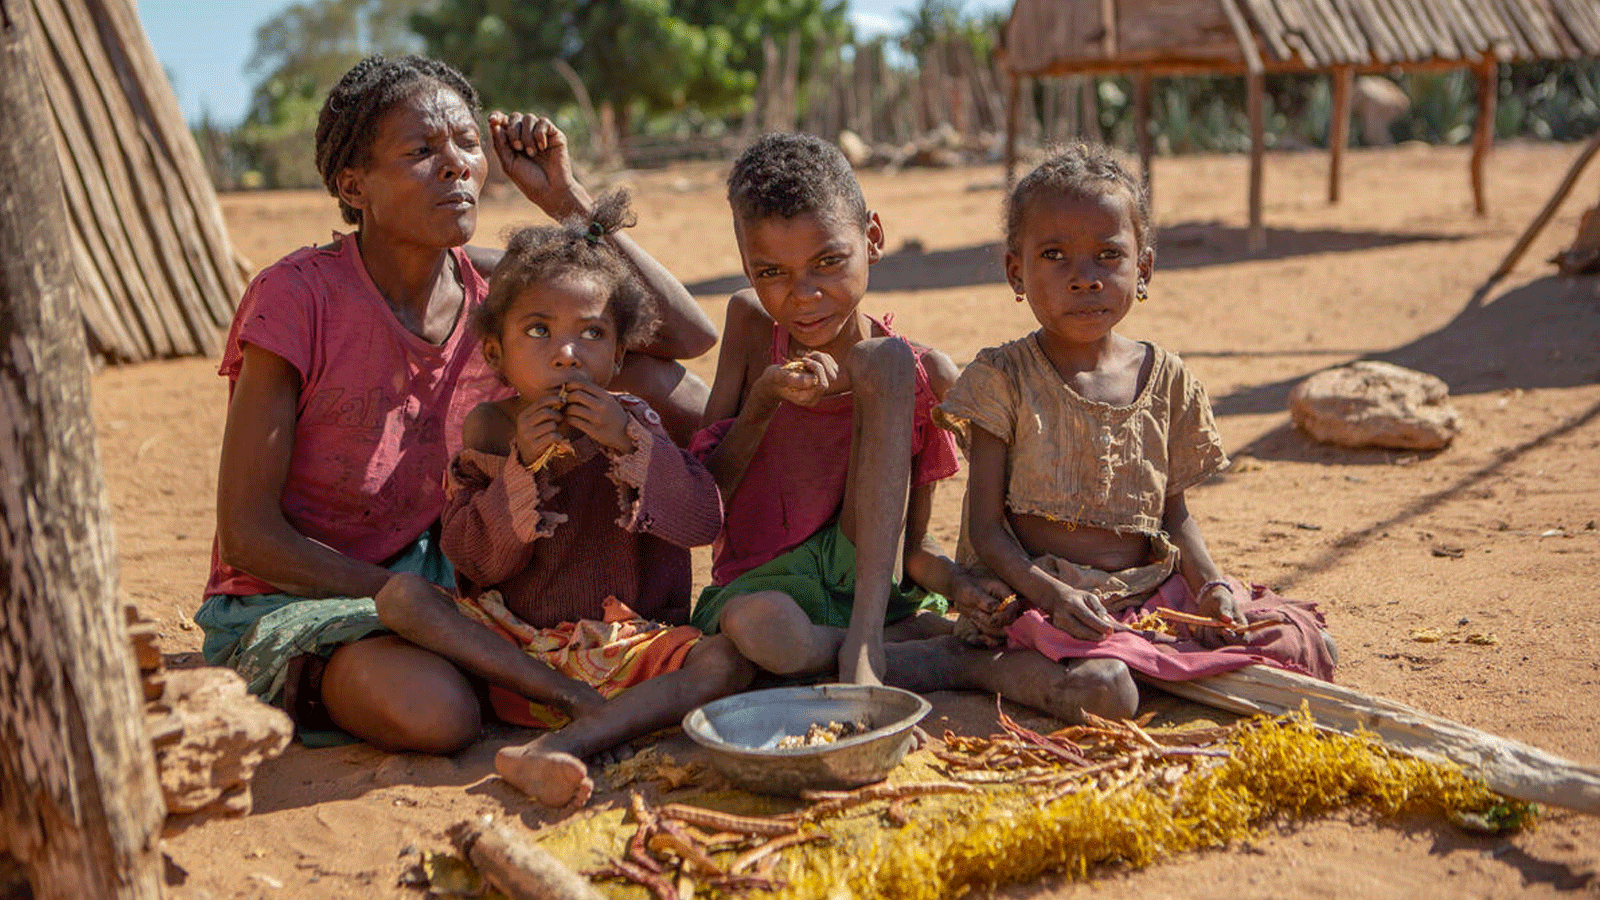 صورة نشرتها صفحة برنامج الأغذية العالمي الرسمية على تويتر(WEP) لعائلة تعاني الجوع في جنوب مدغشقر